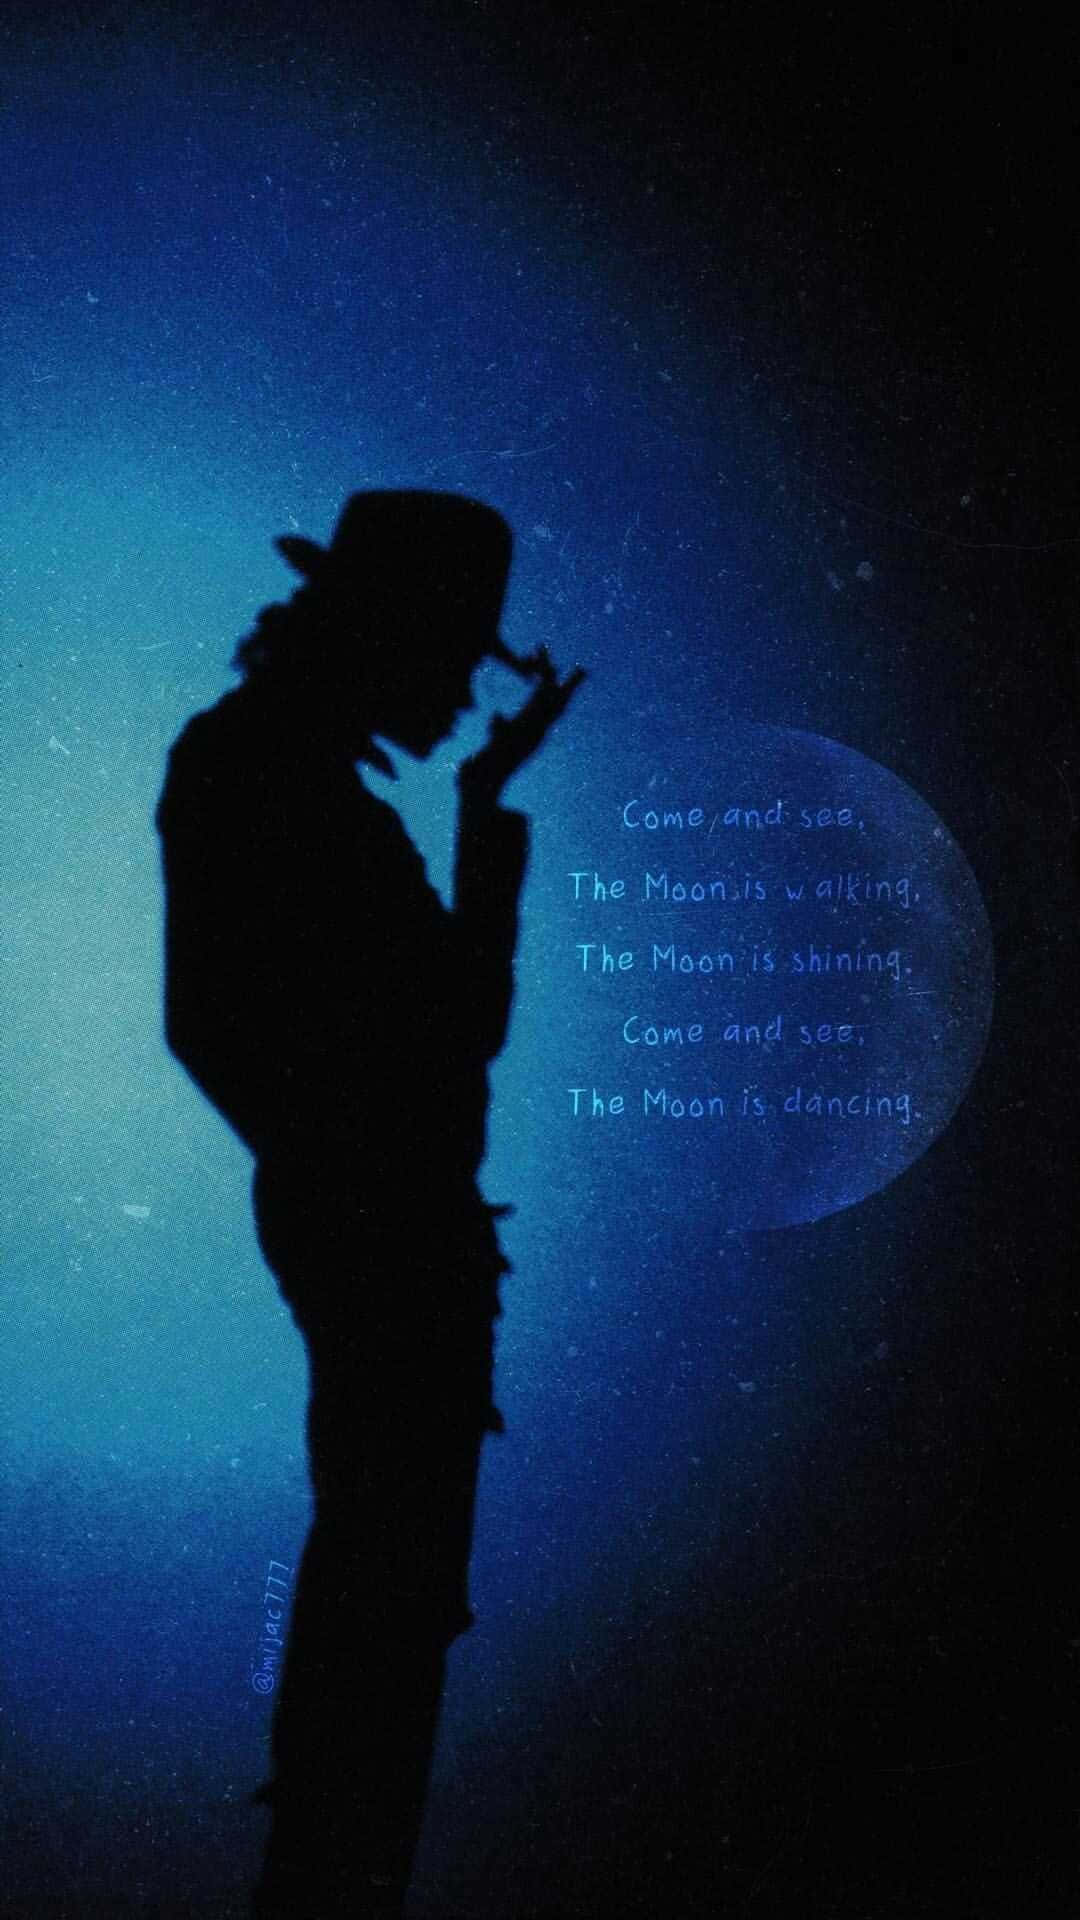 Wallpaperkungen Av Pop Lever Vidare Med Michael Jackson-telefonbakgrunden. Wallpaper